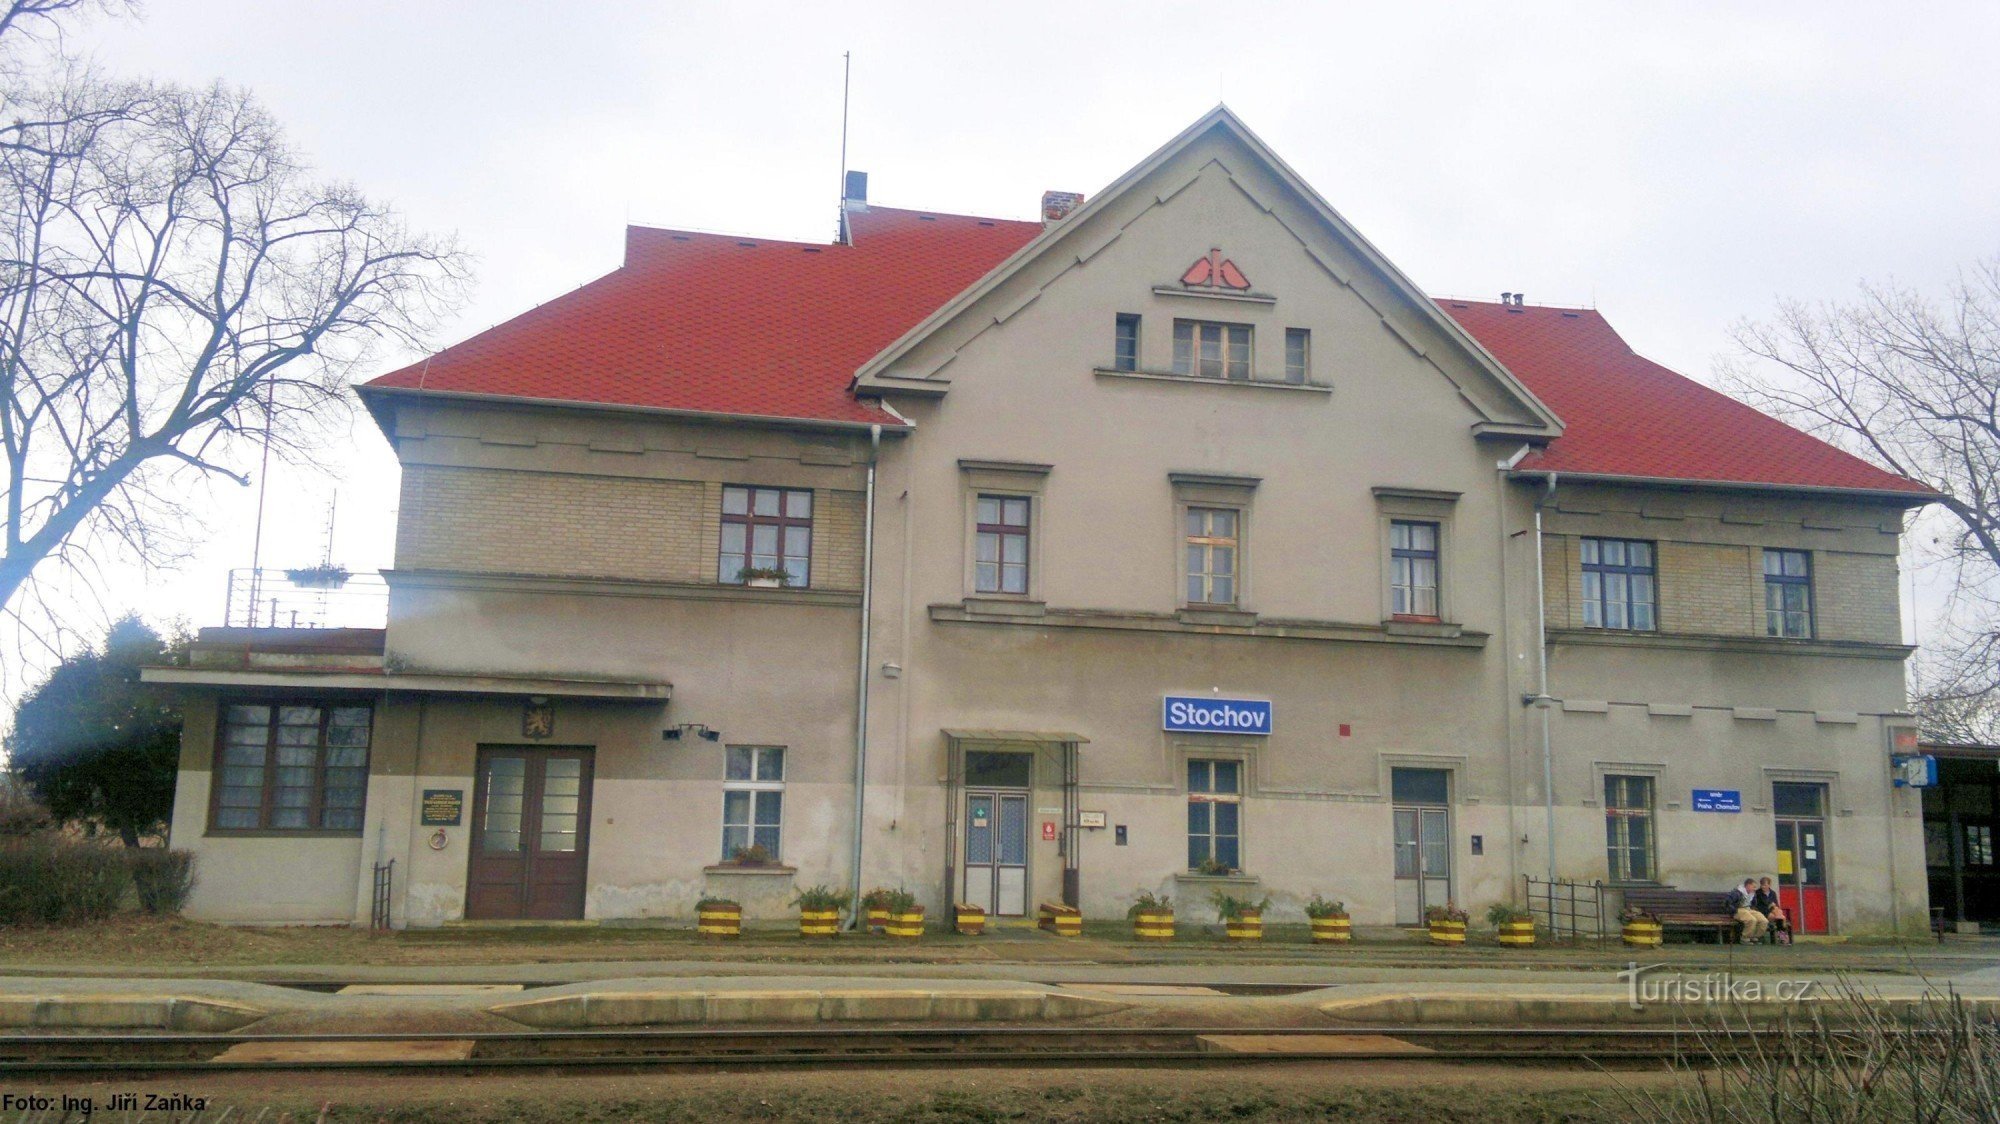 Bahnhof Stochov